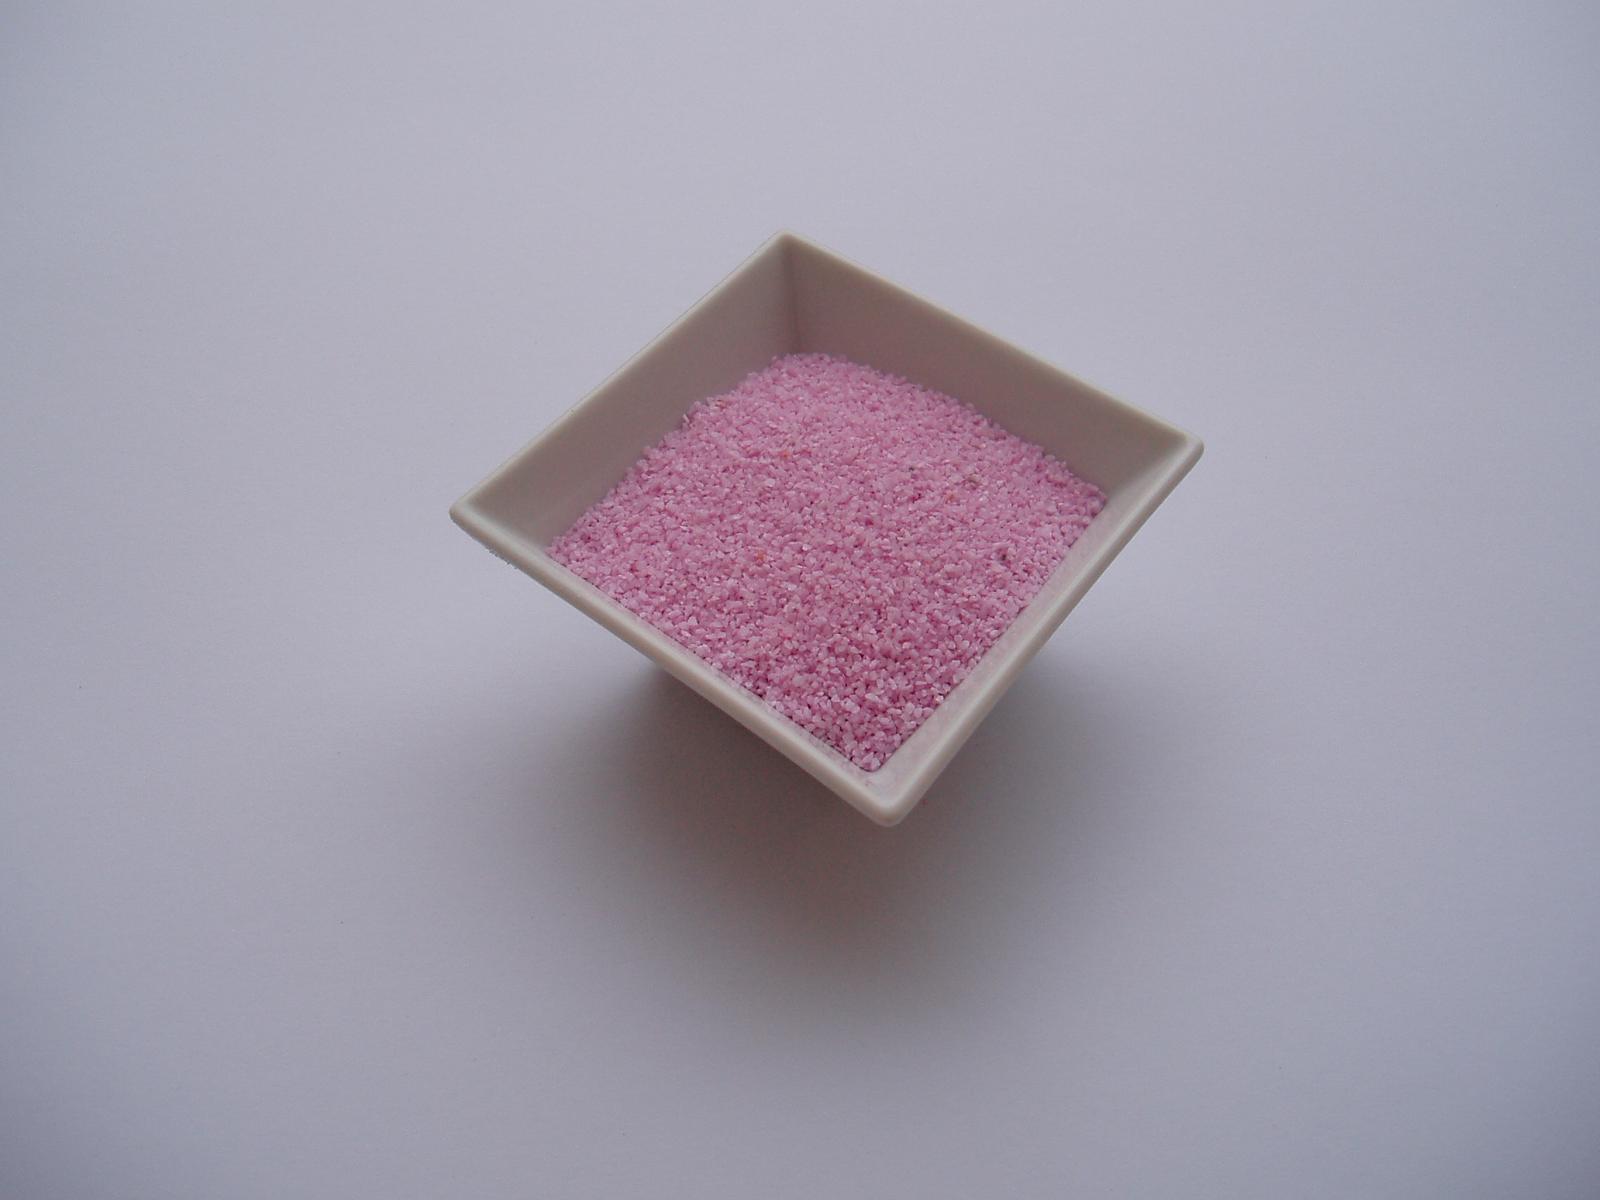 dekorační písek 1 kg-světle růžový - Obrázek č. 1